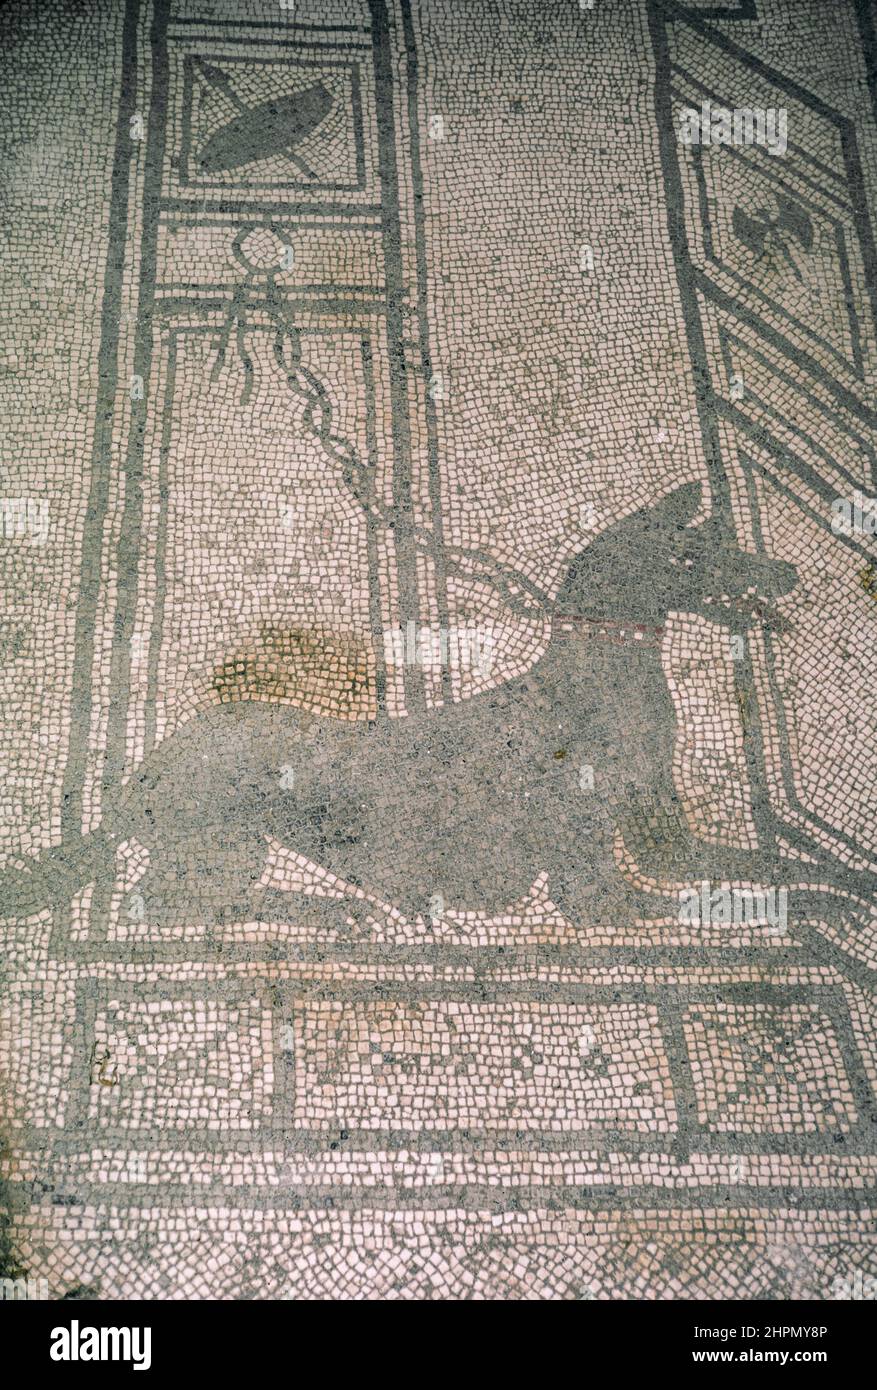 Archivo de exploración de las ruinas de la comuna de Pompeya destruida por la erupción del Monte Vesubio en el año 79 d.C. Cave Canem mosaico (cuidado con los perros). Captura de archivo desde una diapositiva. Abril de 1970. Foto de stock